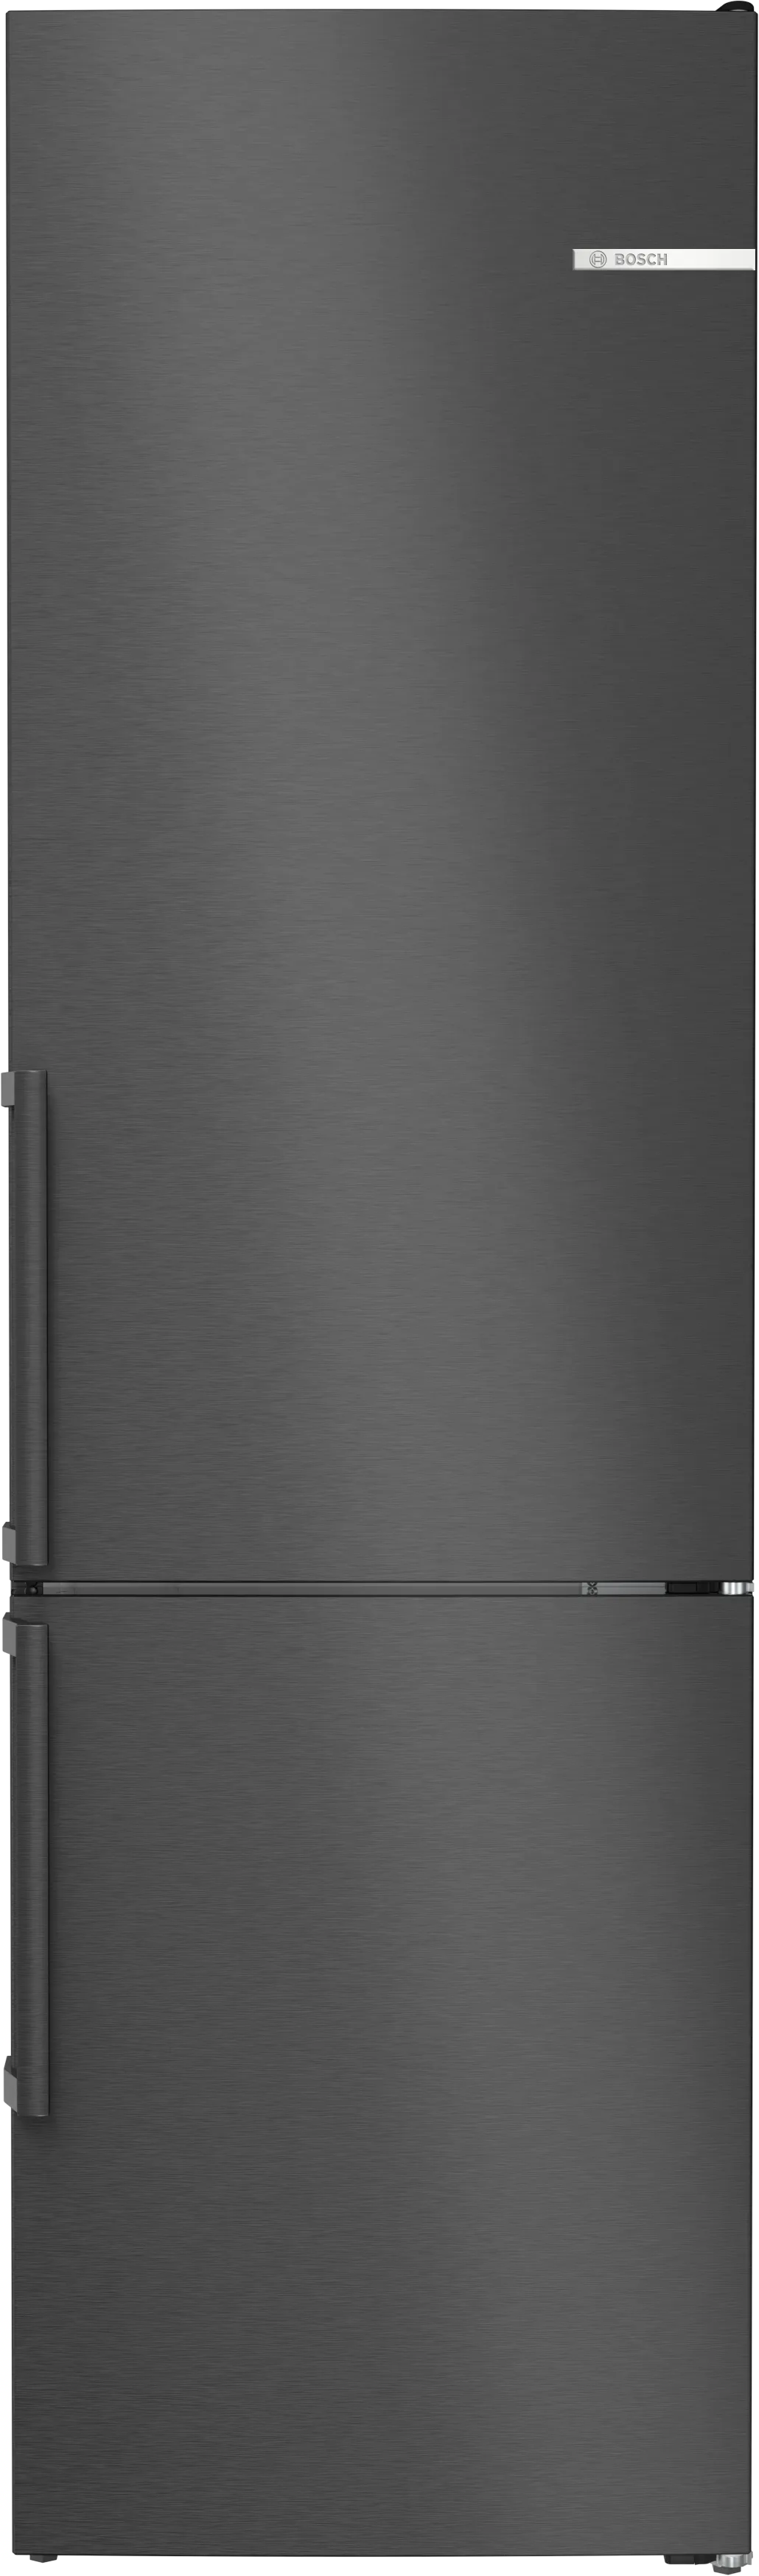 Serie 4 Volně stojící chladnička s mrazákem dole 203 x 60 cm černá matná ocel s úpravou proti otiskům prstů 